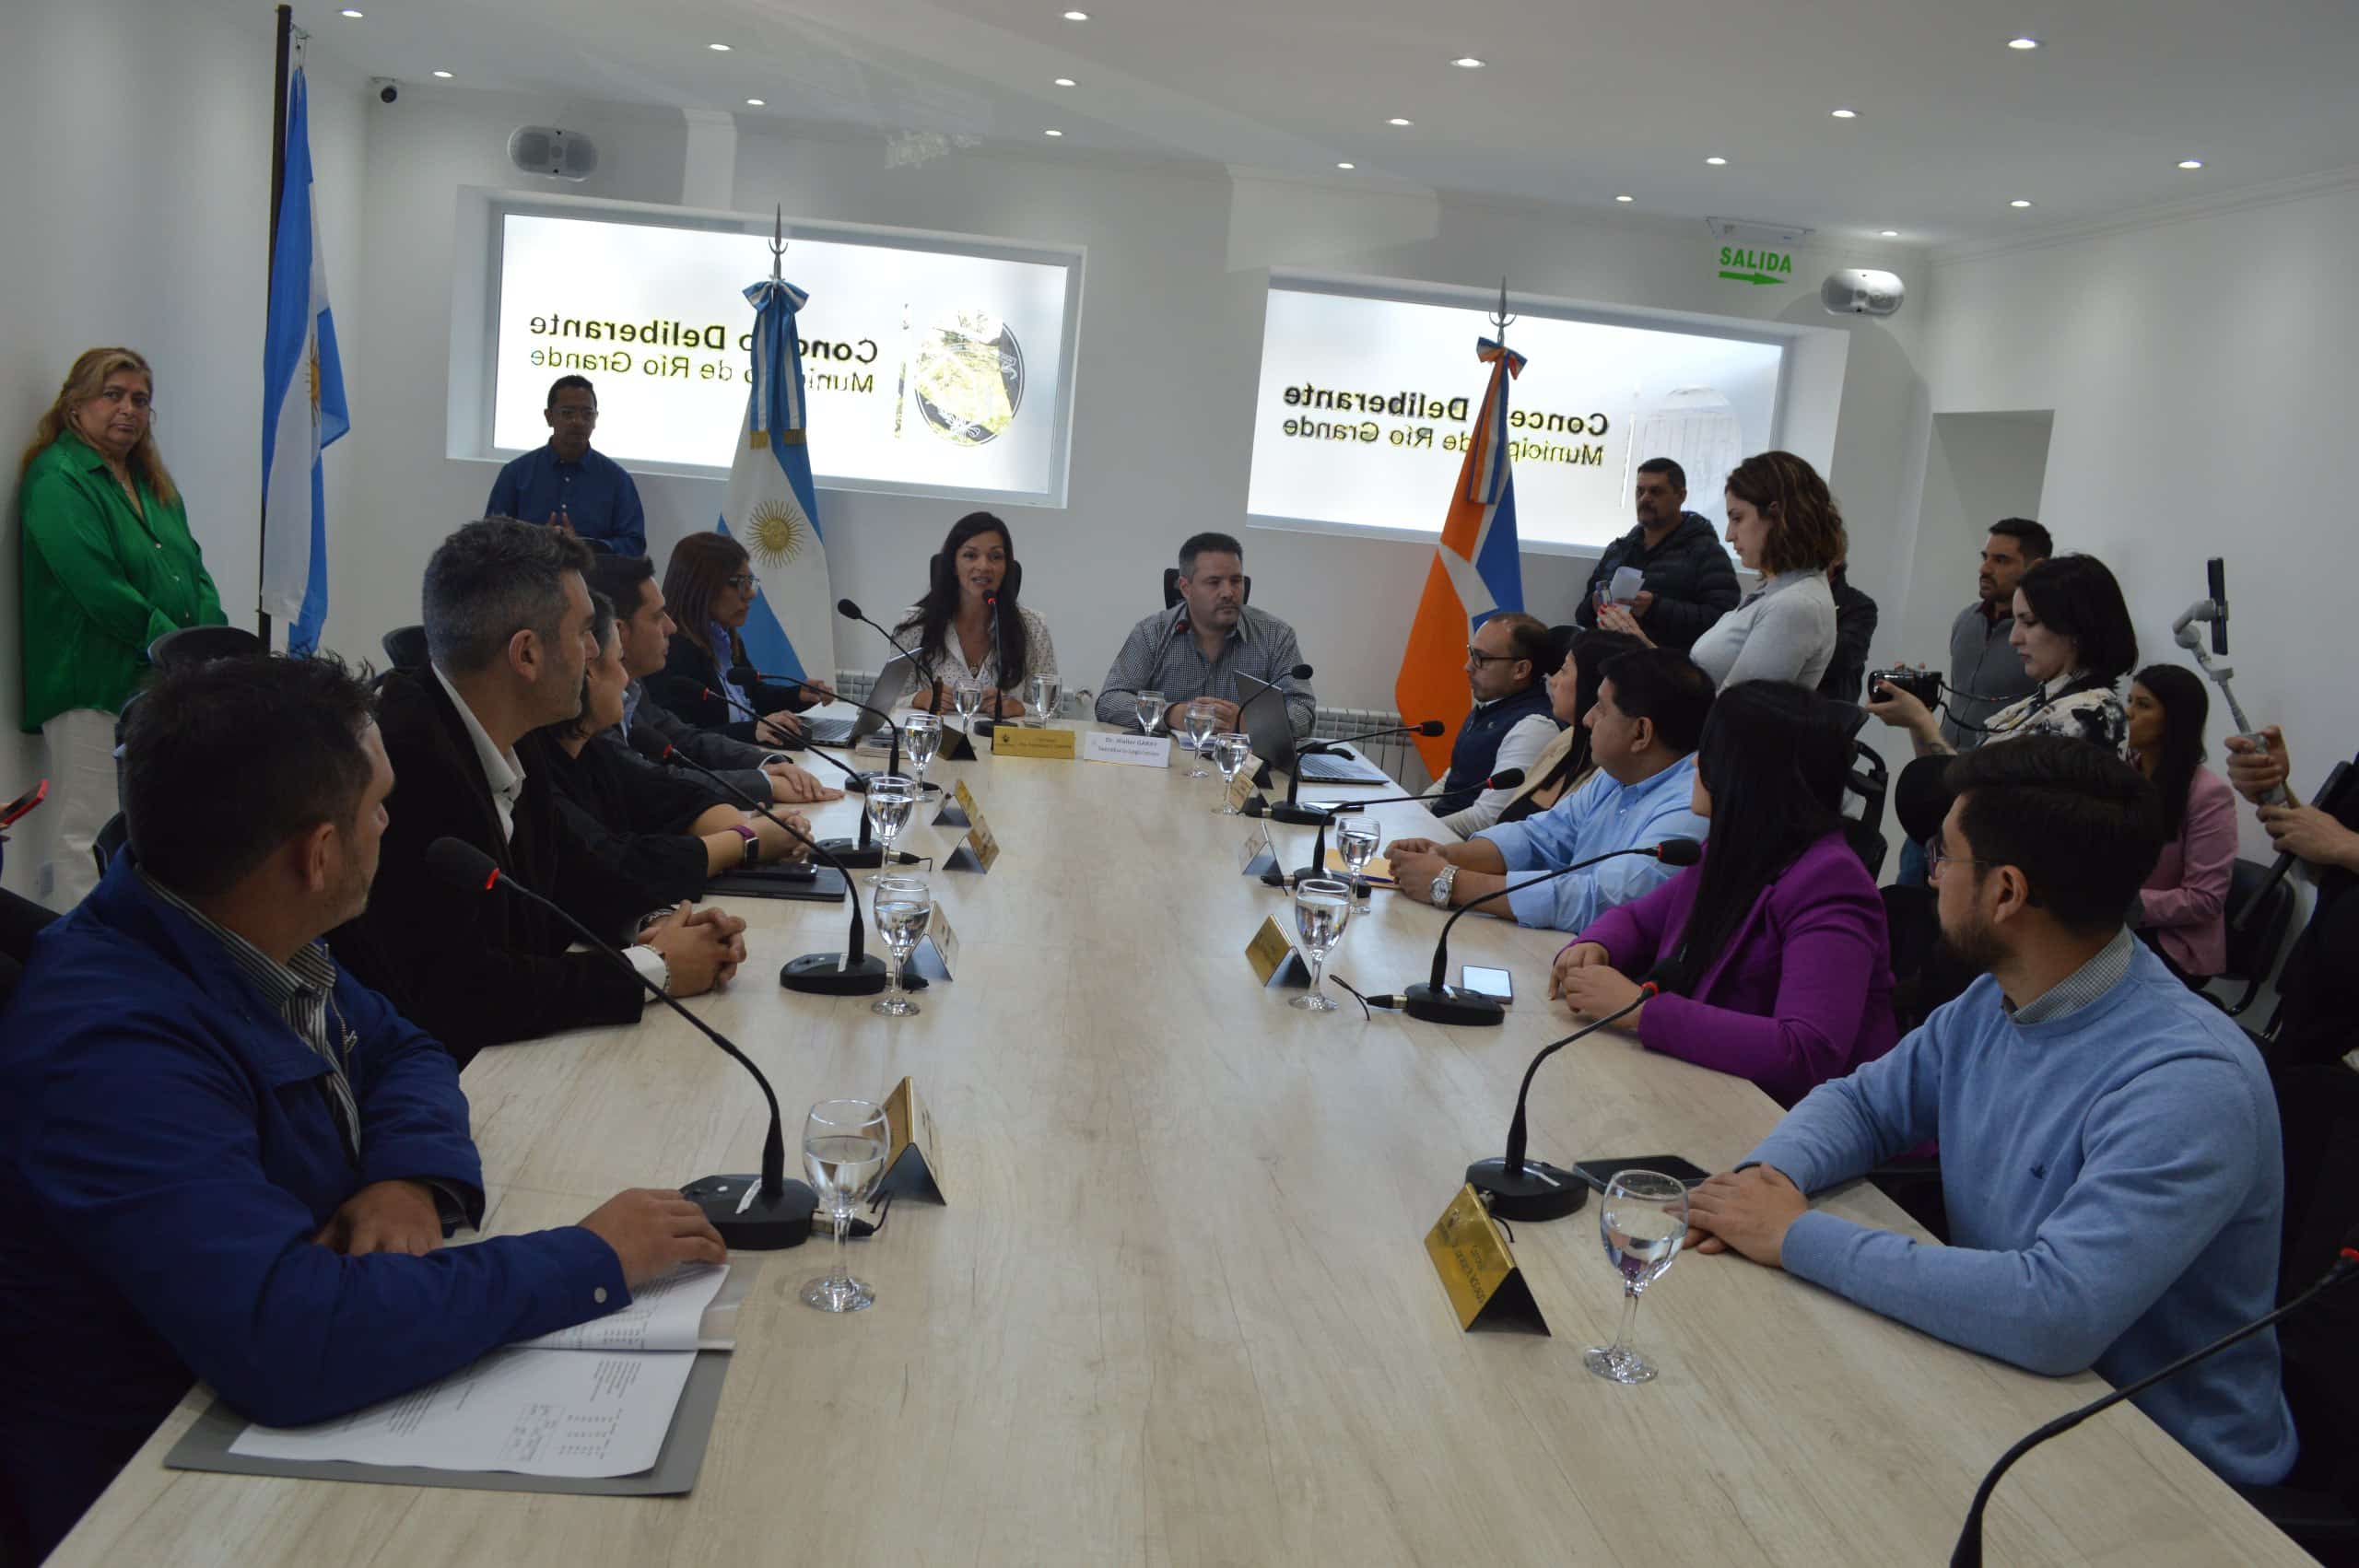 El Concejo Deliberante en Río Grande apuntará a bajar la recaudación y planta municipal